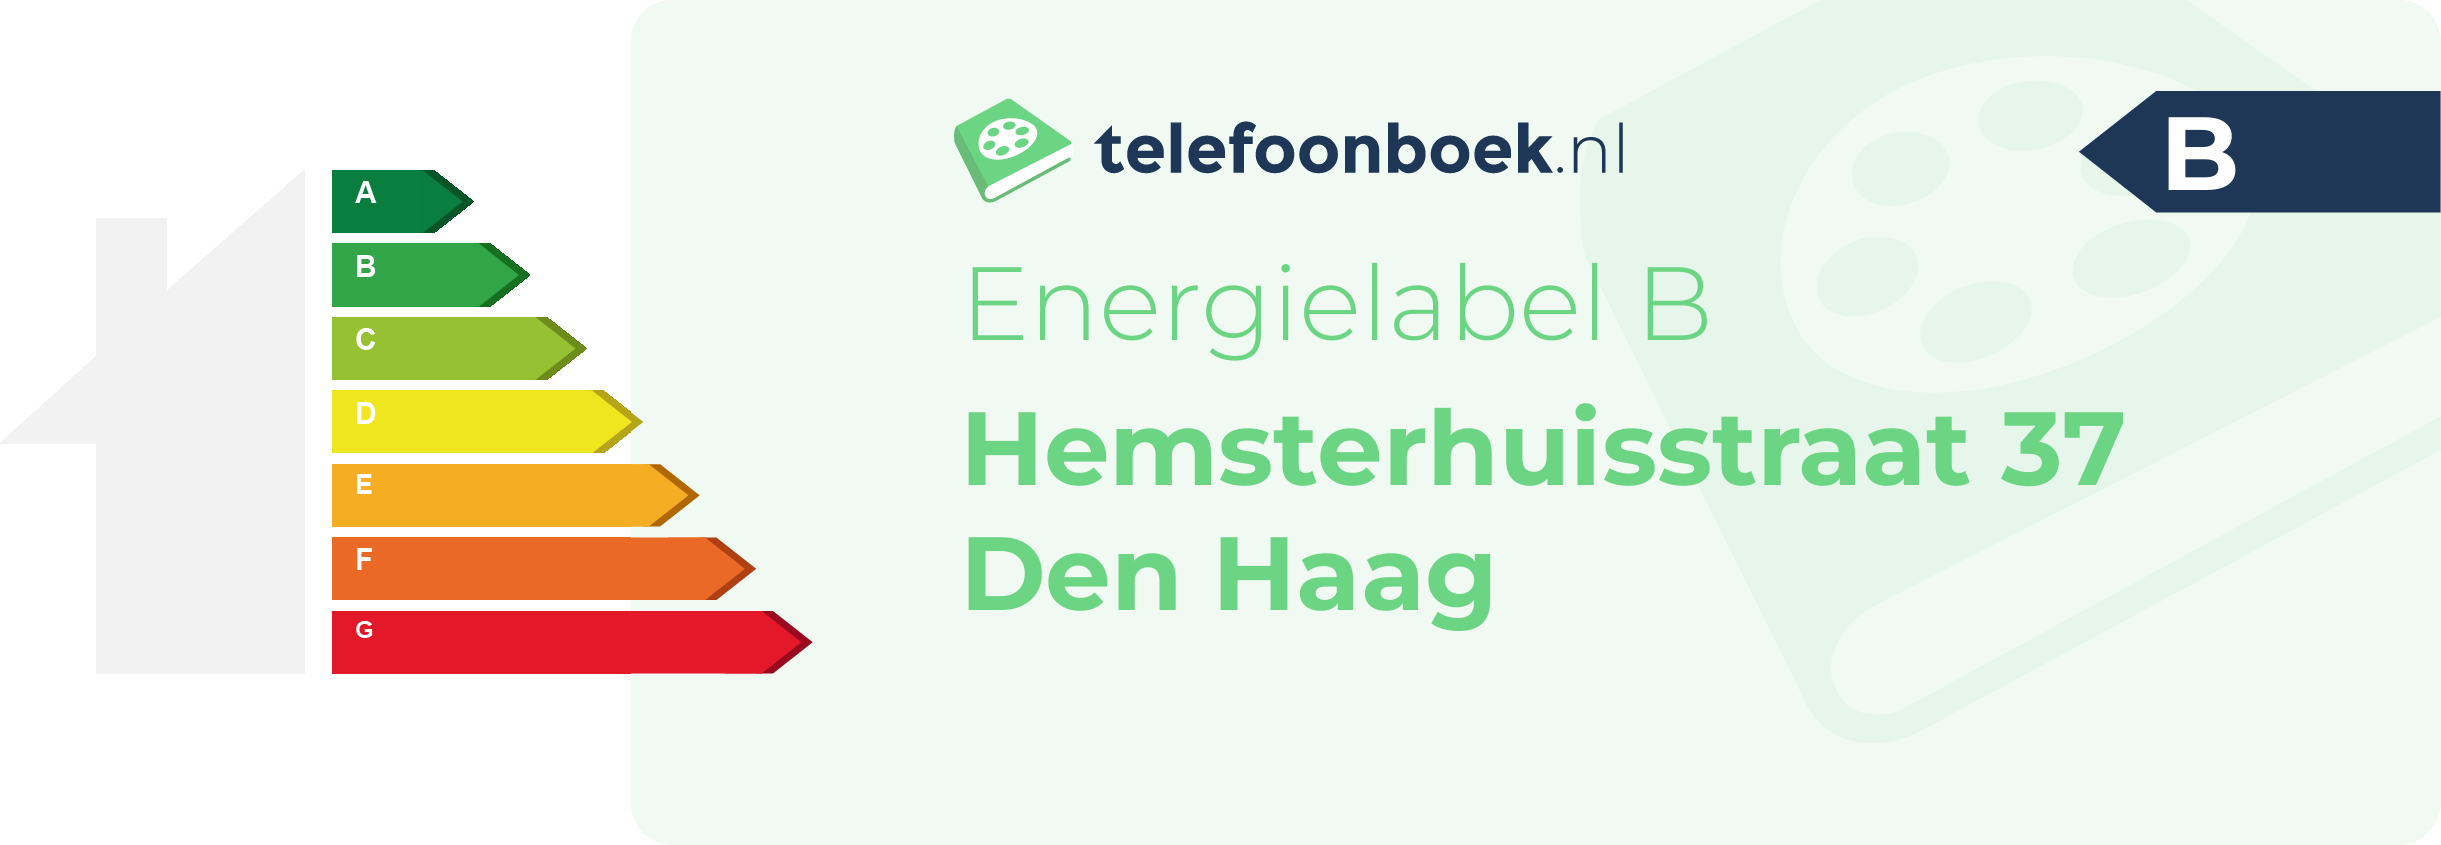 Energielabel Hemsterhuisstraat 37 Den Haag